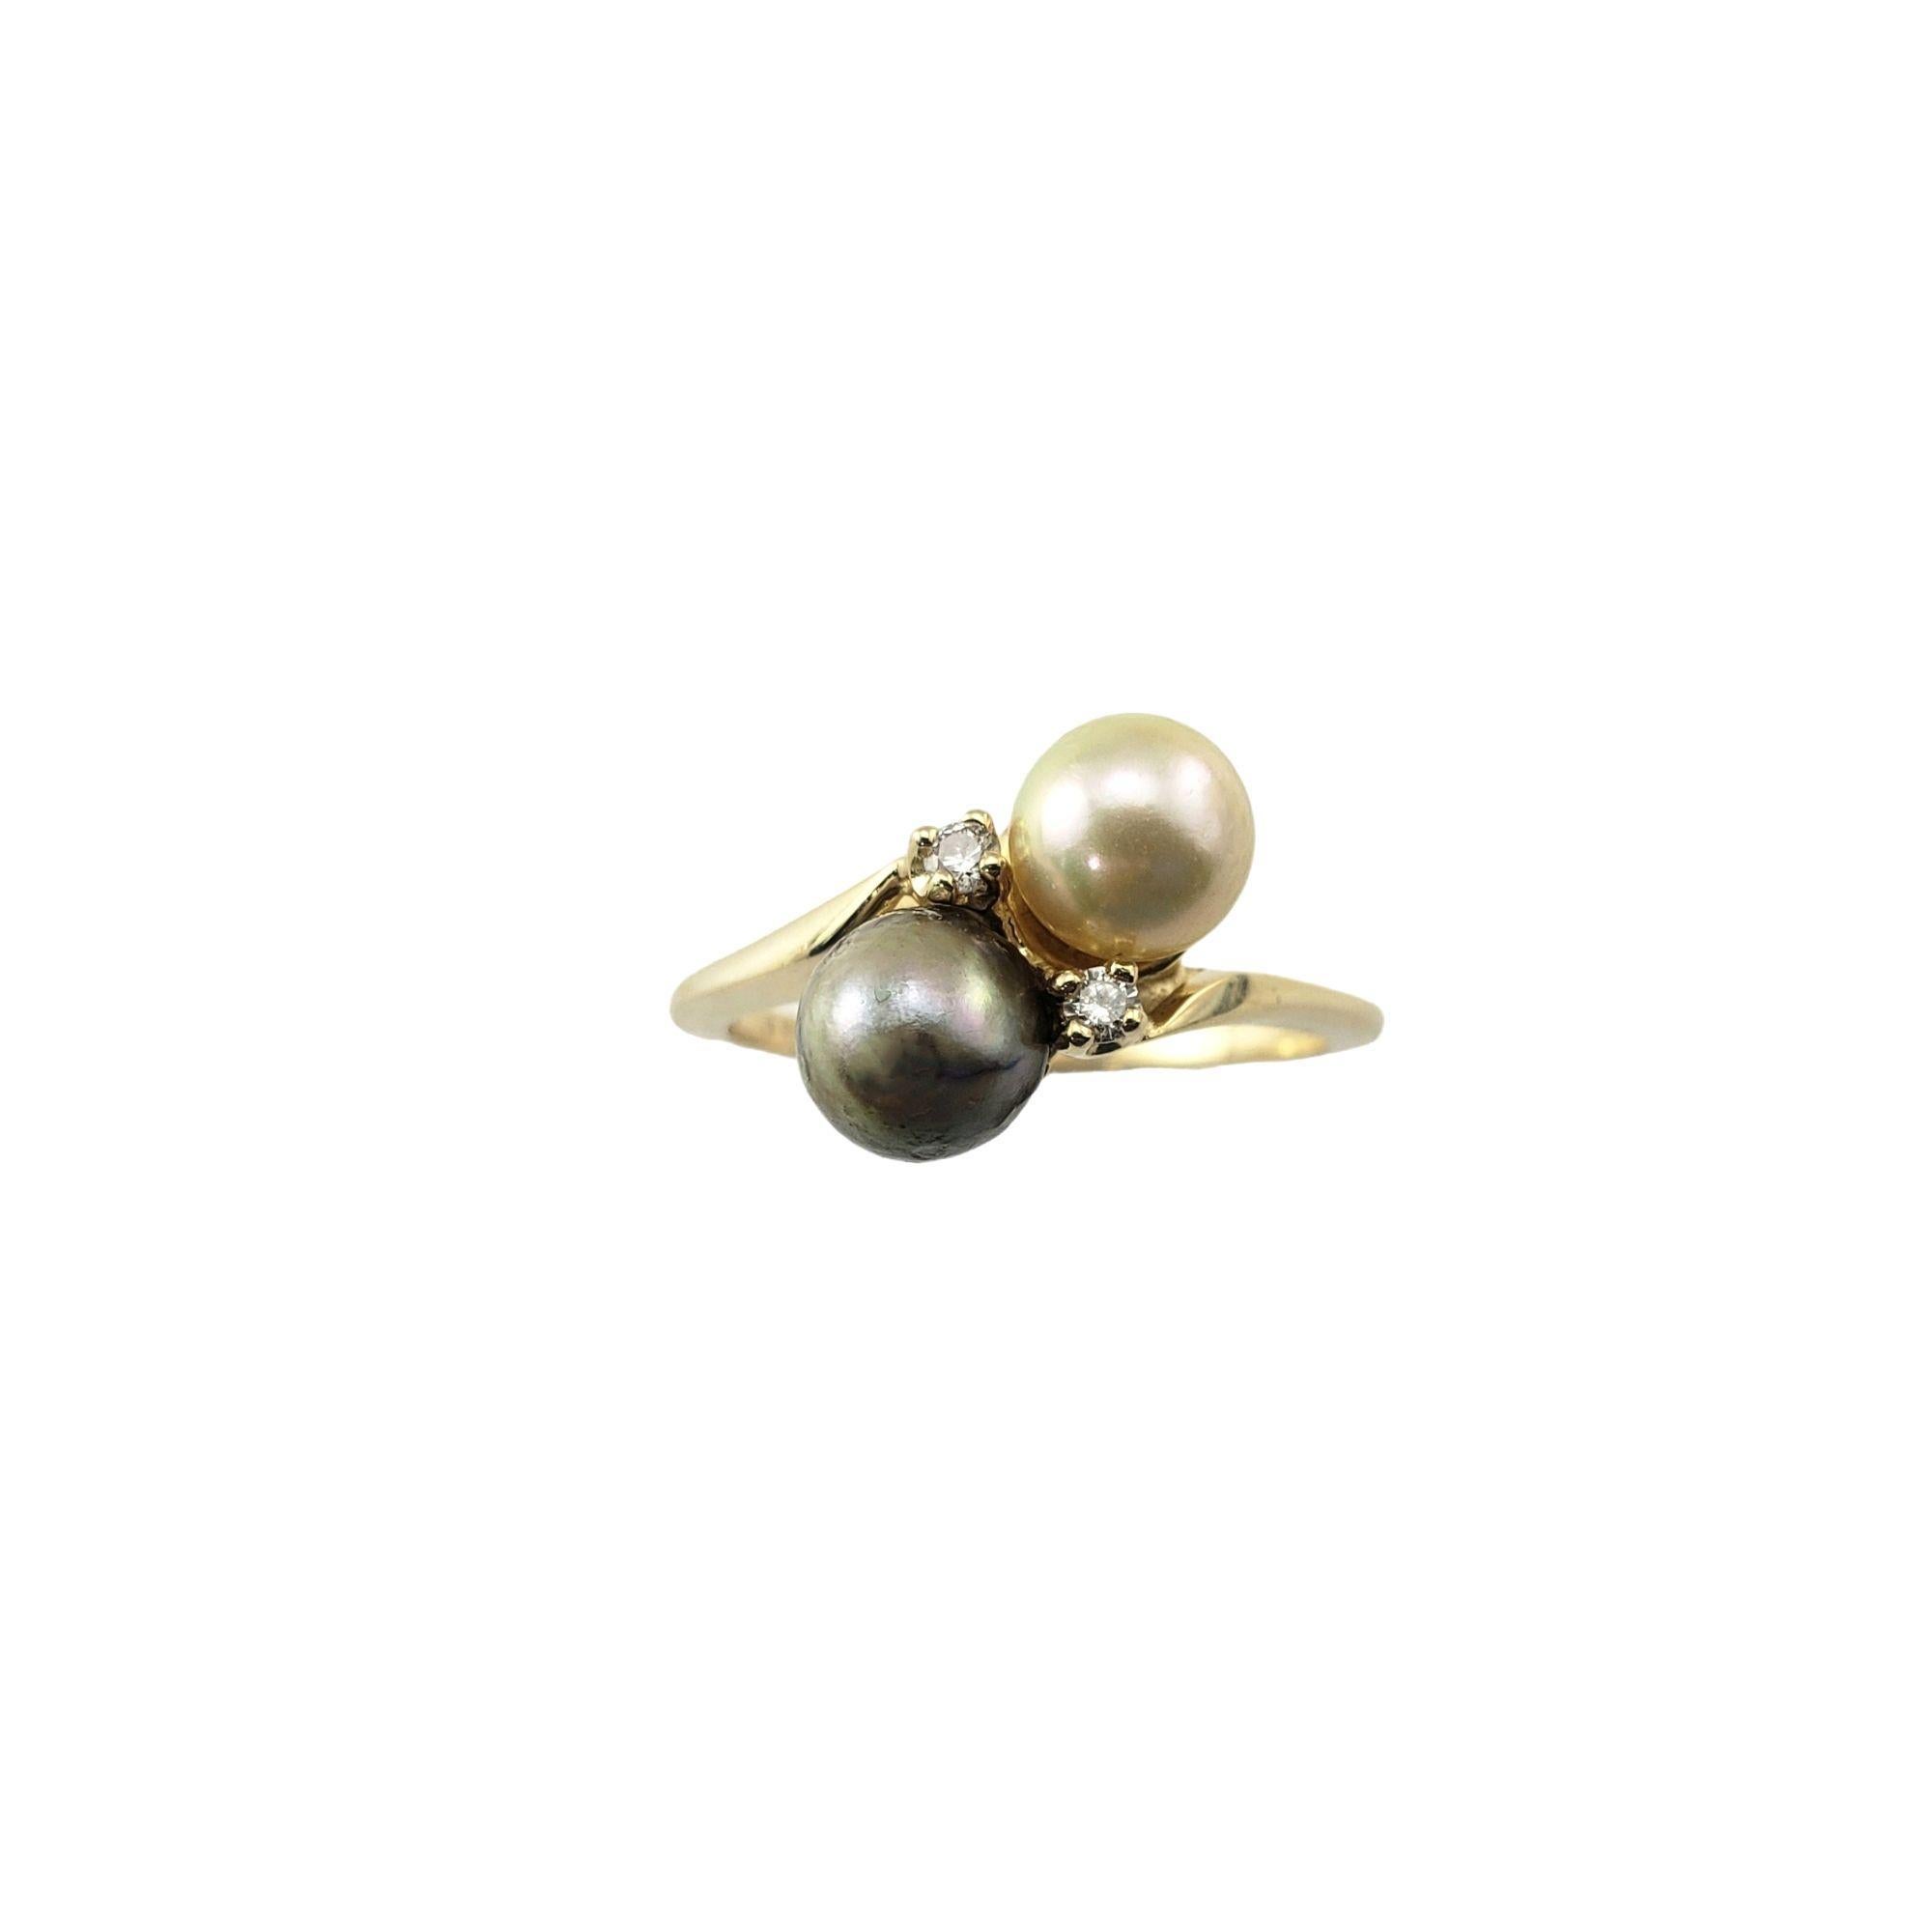 14 Karat Gelbgold Perle und Diamant Ring Größe 8

Dieser elegante Ring besteht aus einer schwarzen und einer weißen Perle (je 6 mm) und zwei runden Diamanten im Brillantschliff, die in klassischem 14-karätigem Gelbgold gefasst sind. 

Ungefähres